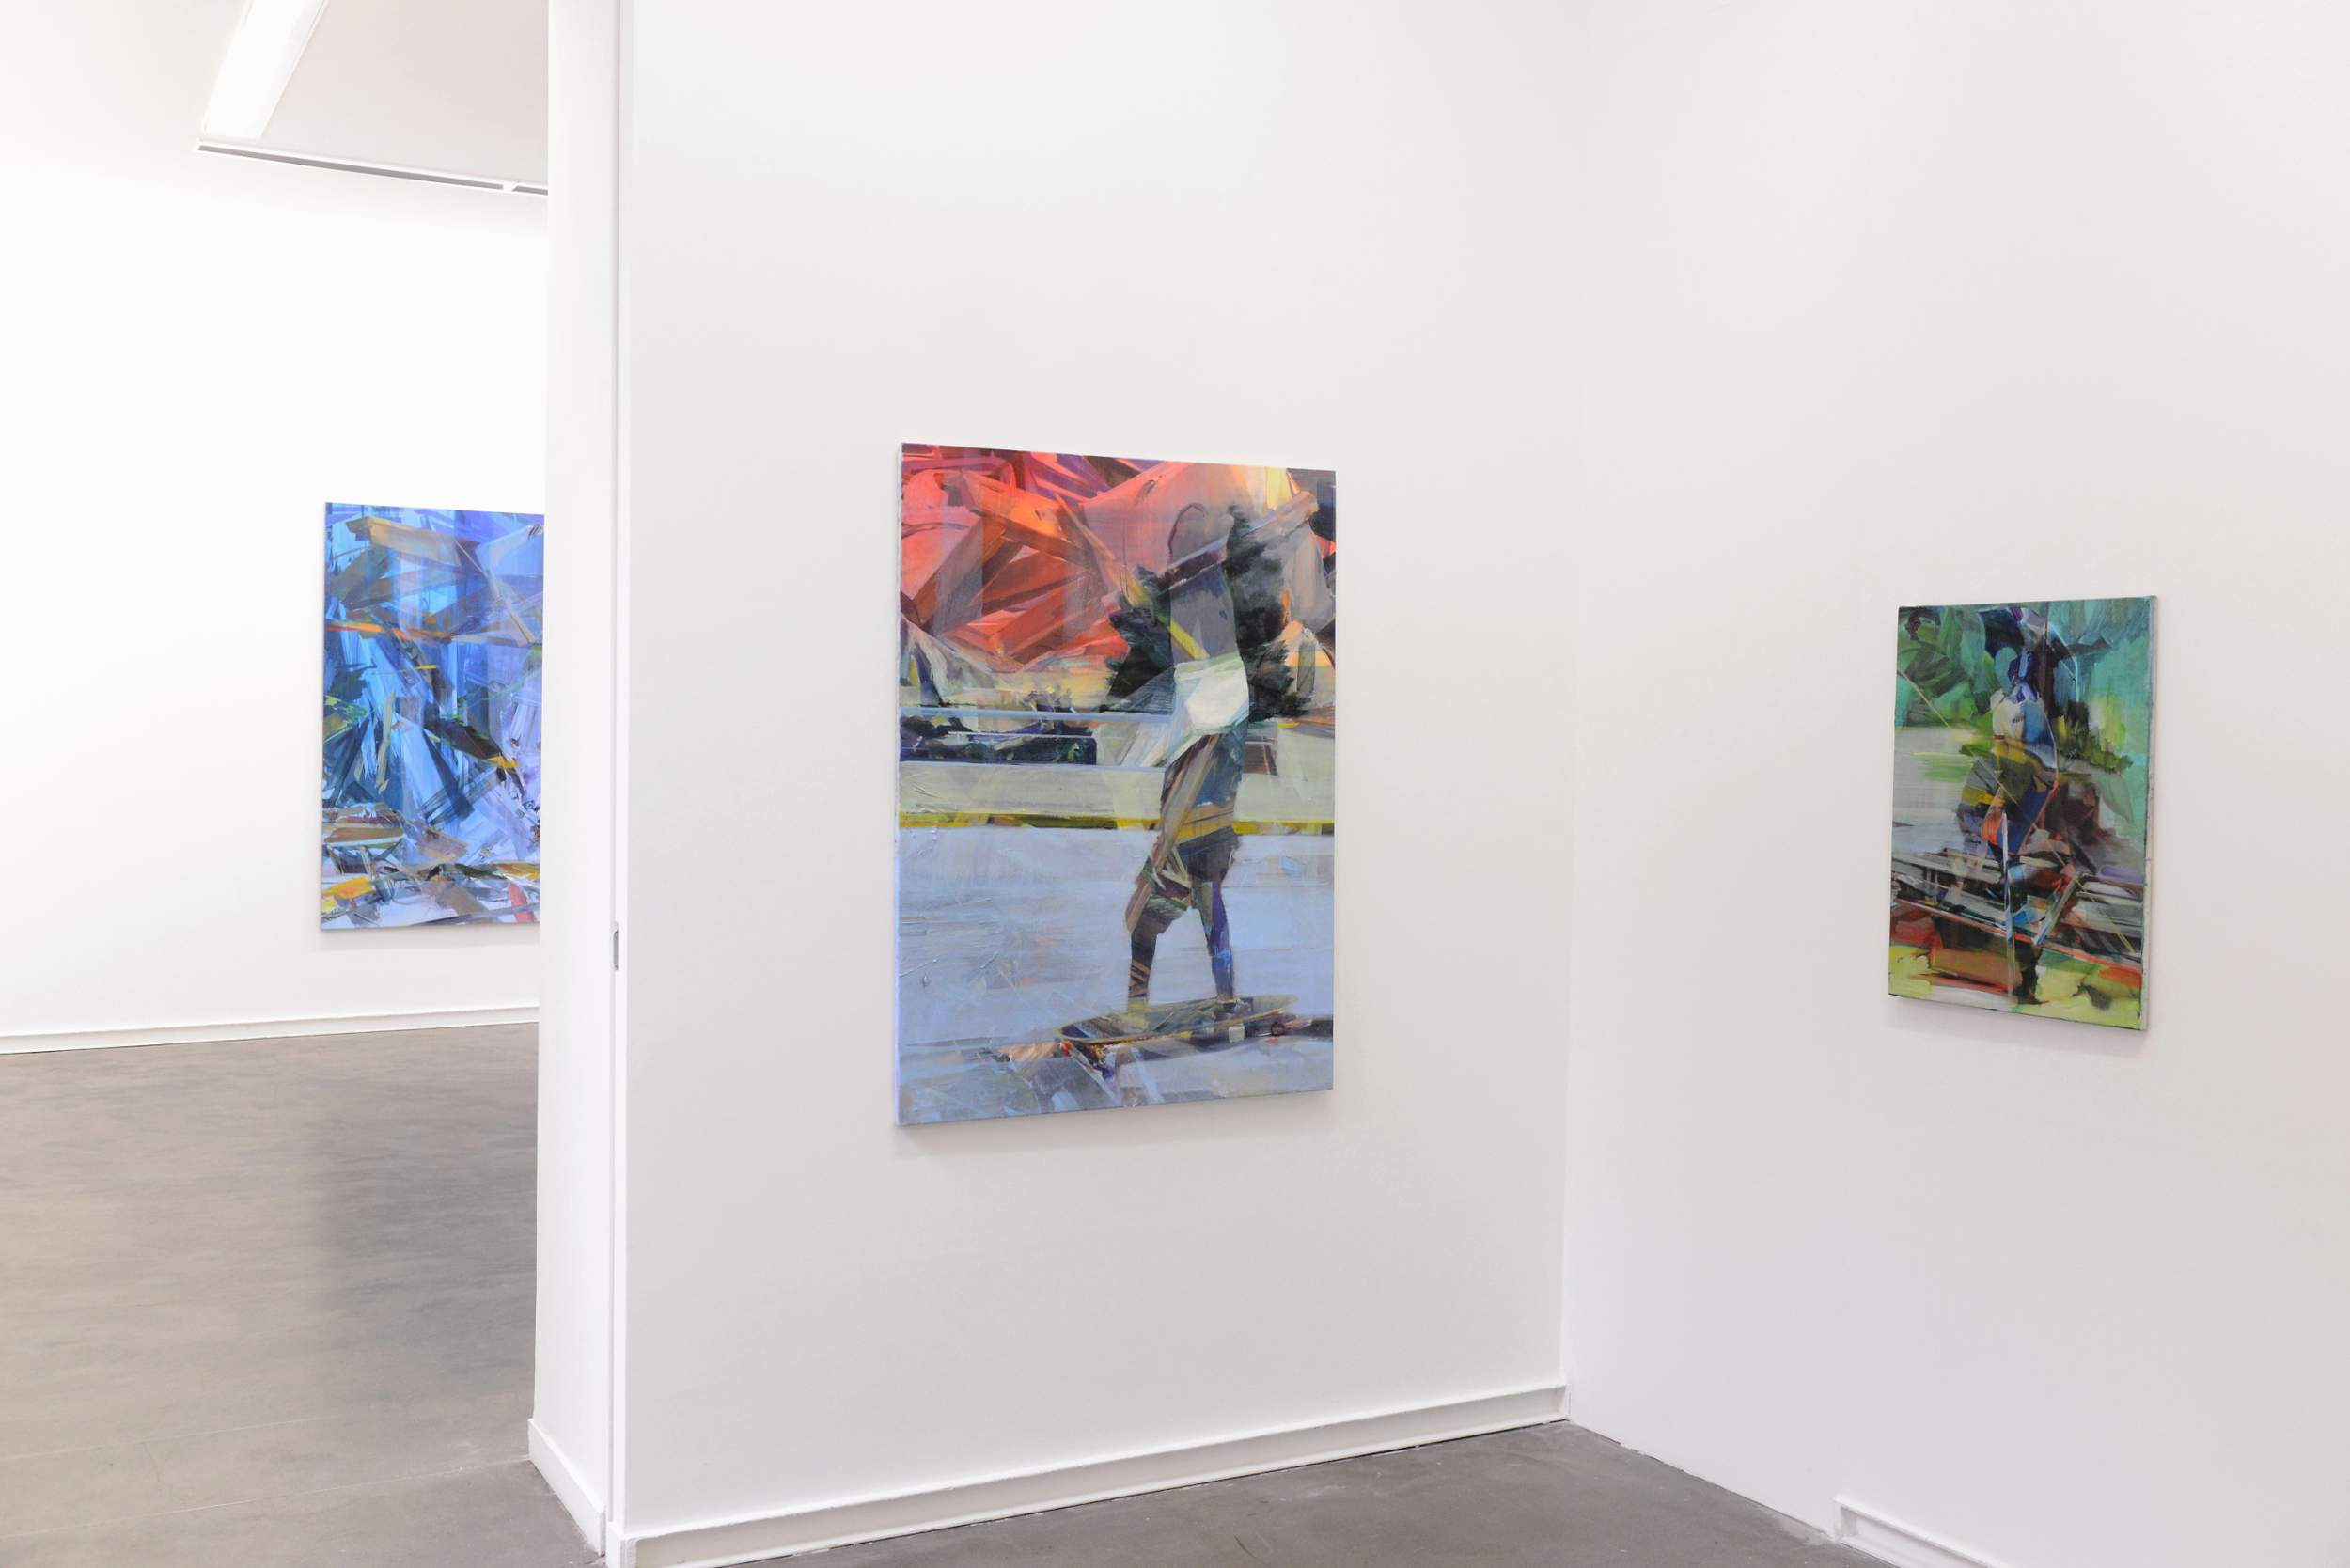   Slashers  ,  &nbsp;  Mitterrand Gallery, Paris 2015  